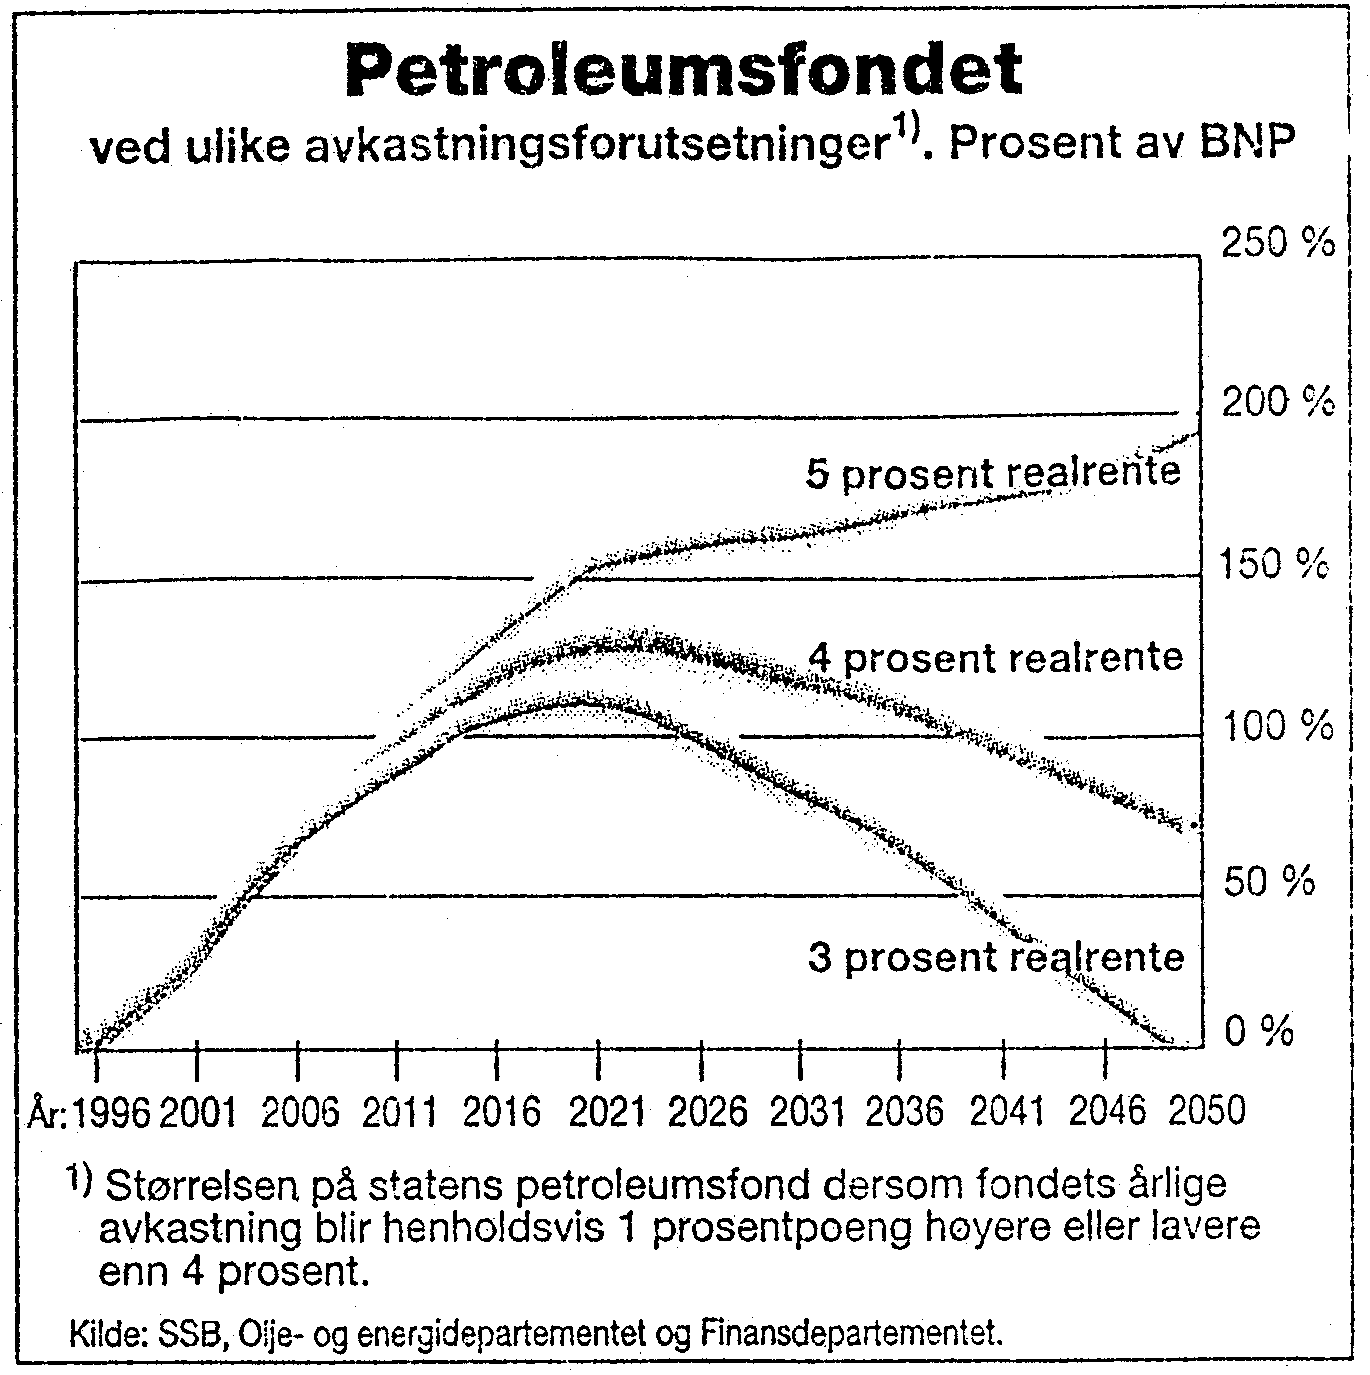 Figur 1.3: Petroleumsfondet ved ulike avkastningsforutsetninger (dersom fondets årlige avkastning blir henholdsvis 1 prosentpoeng høyere eller lavere enn 4 prosent i perioden 1996 til 2050).